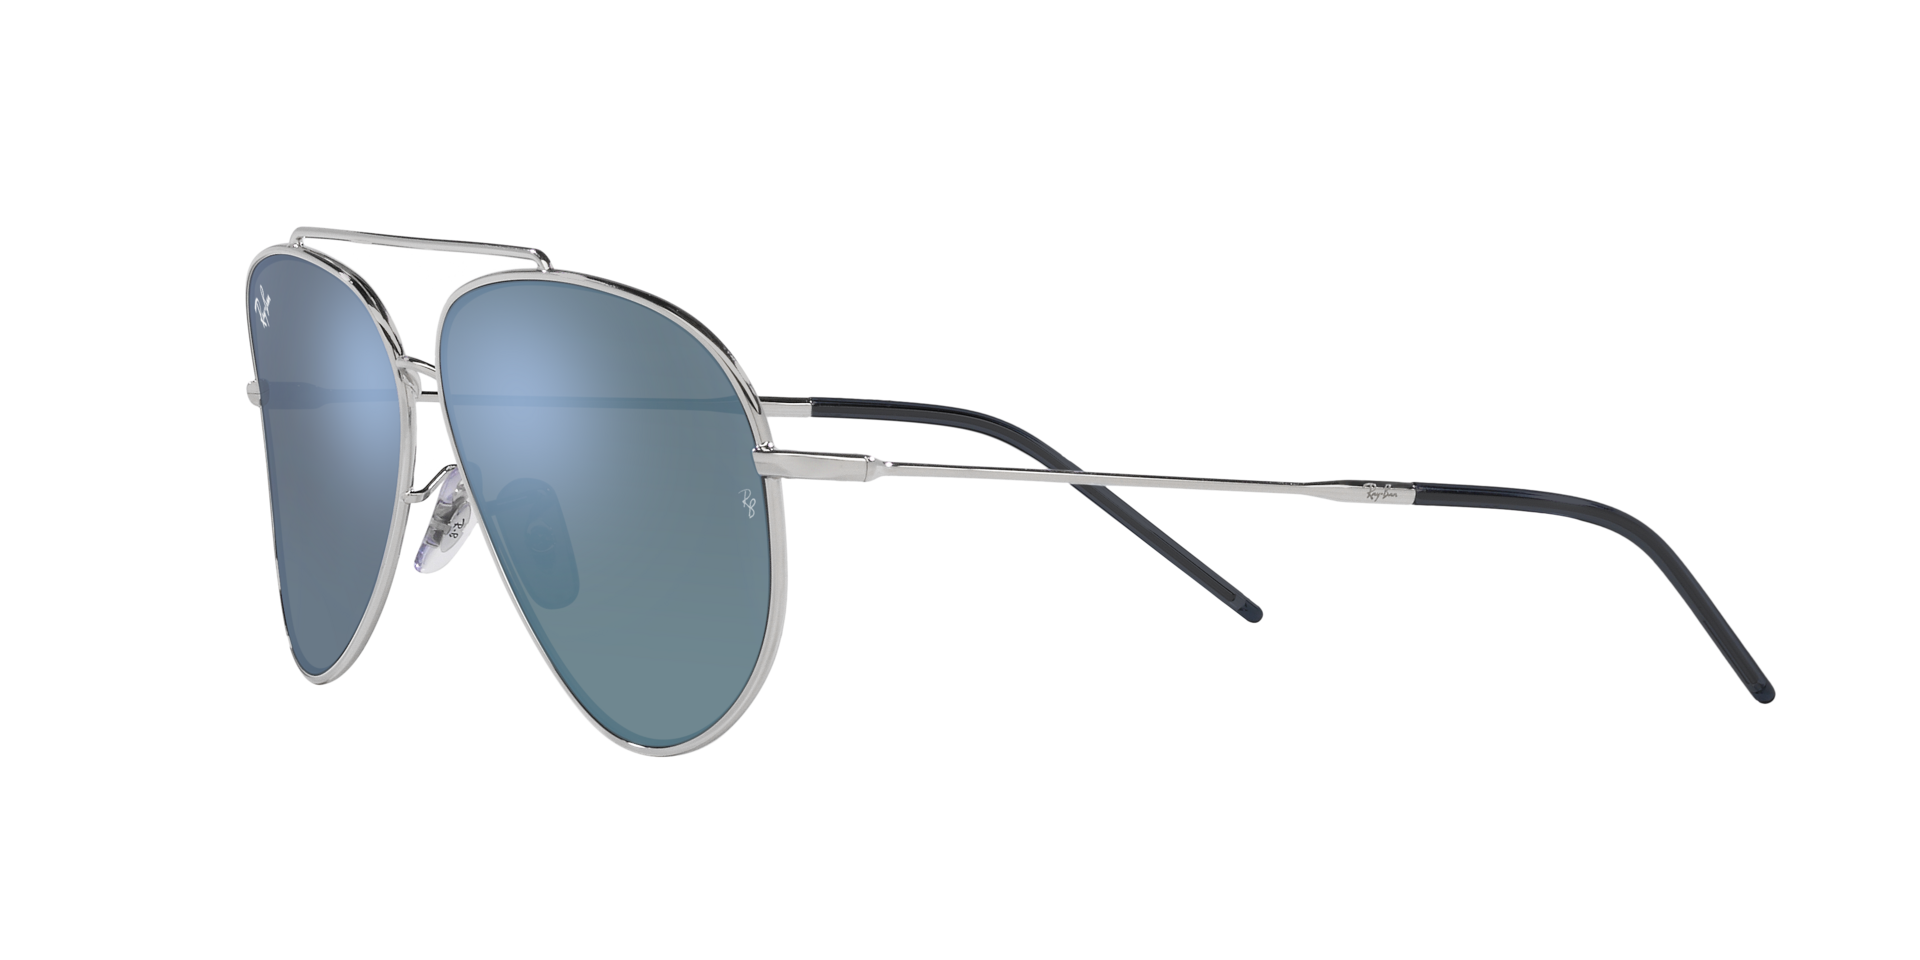 Das Bild zeigt die Sonnenbrille 0101S 003/GA von der Marke Ray Ban in Silber.